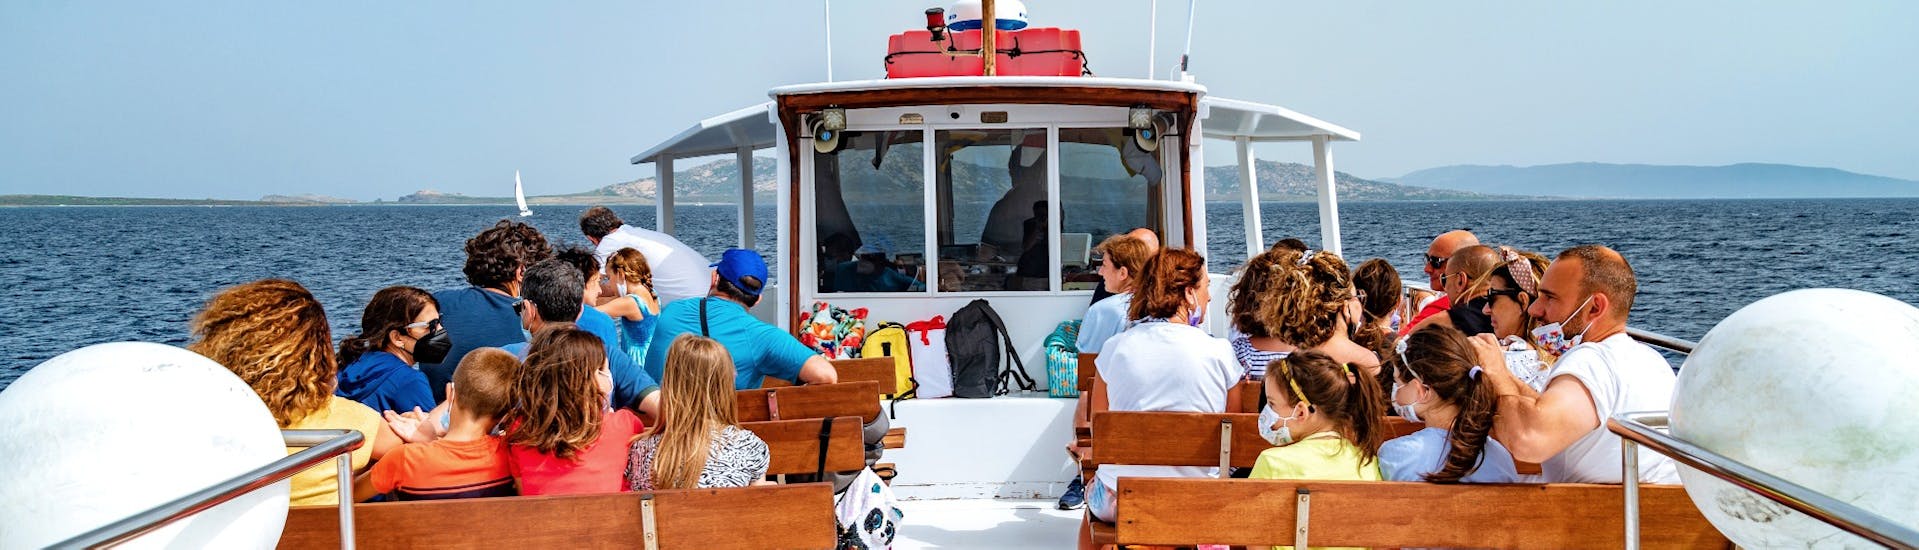 Persone sedute sulla barca di Linea del Parco dell'Asinara durante il Transfer in barca da Stintino all'Asinara.